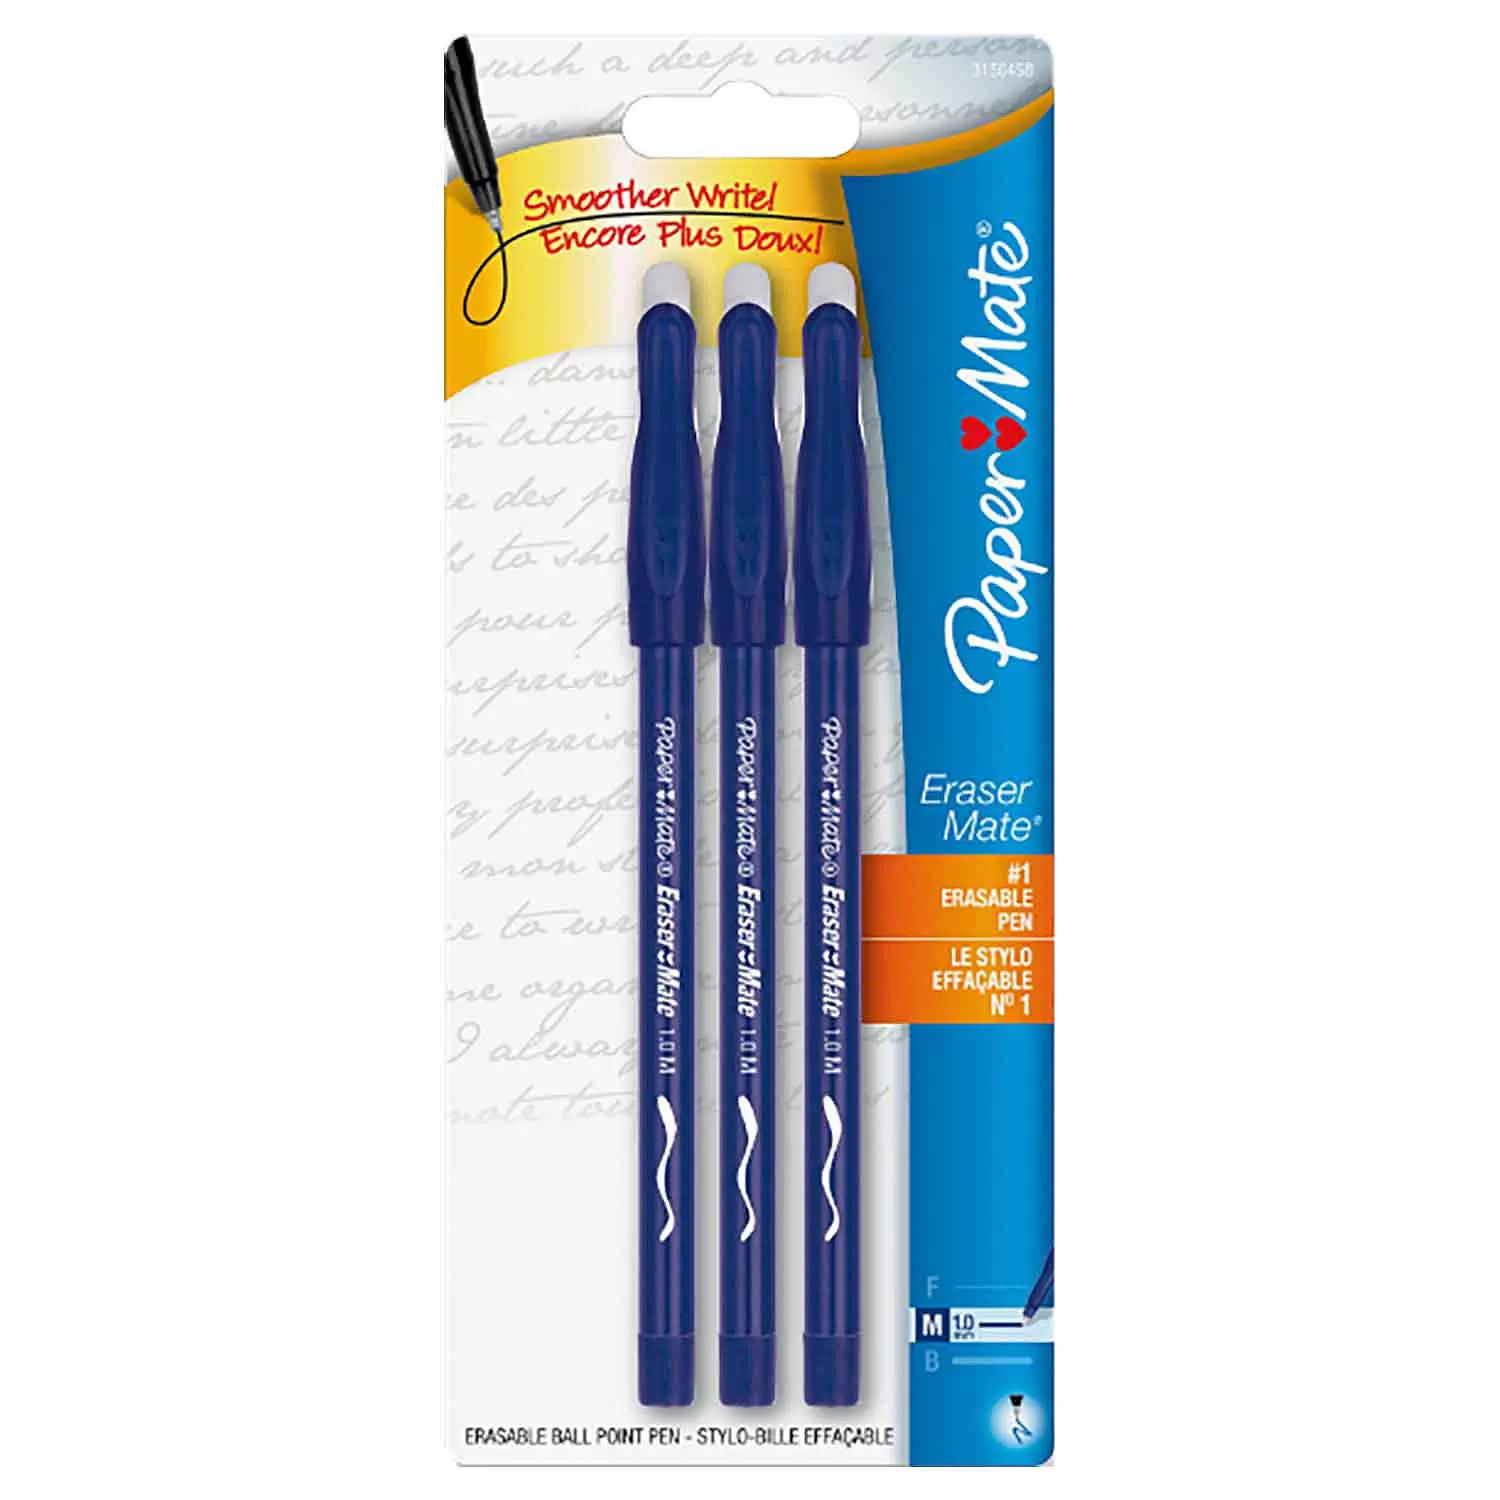 Paper Mate - Eraser Mate erasable ball point pens, pk. of 3, blue